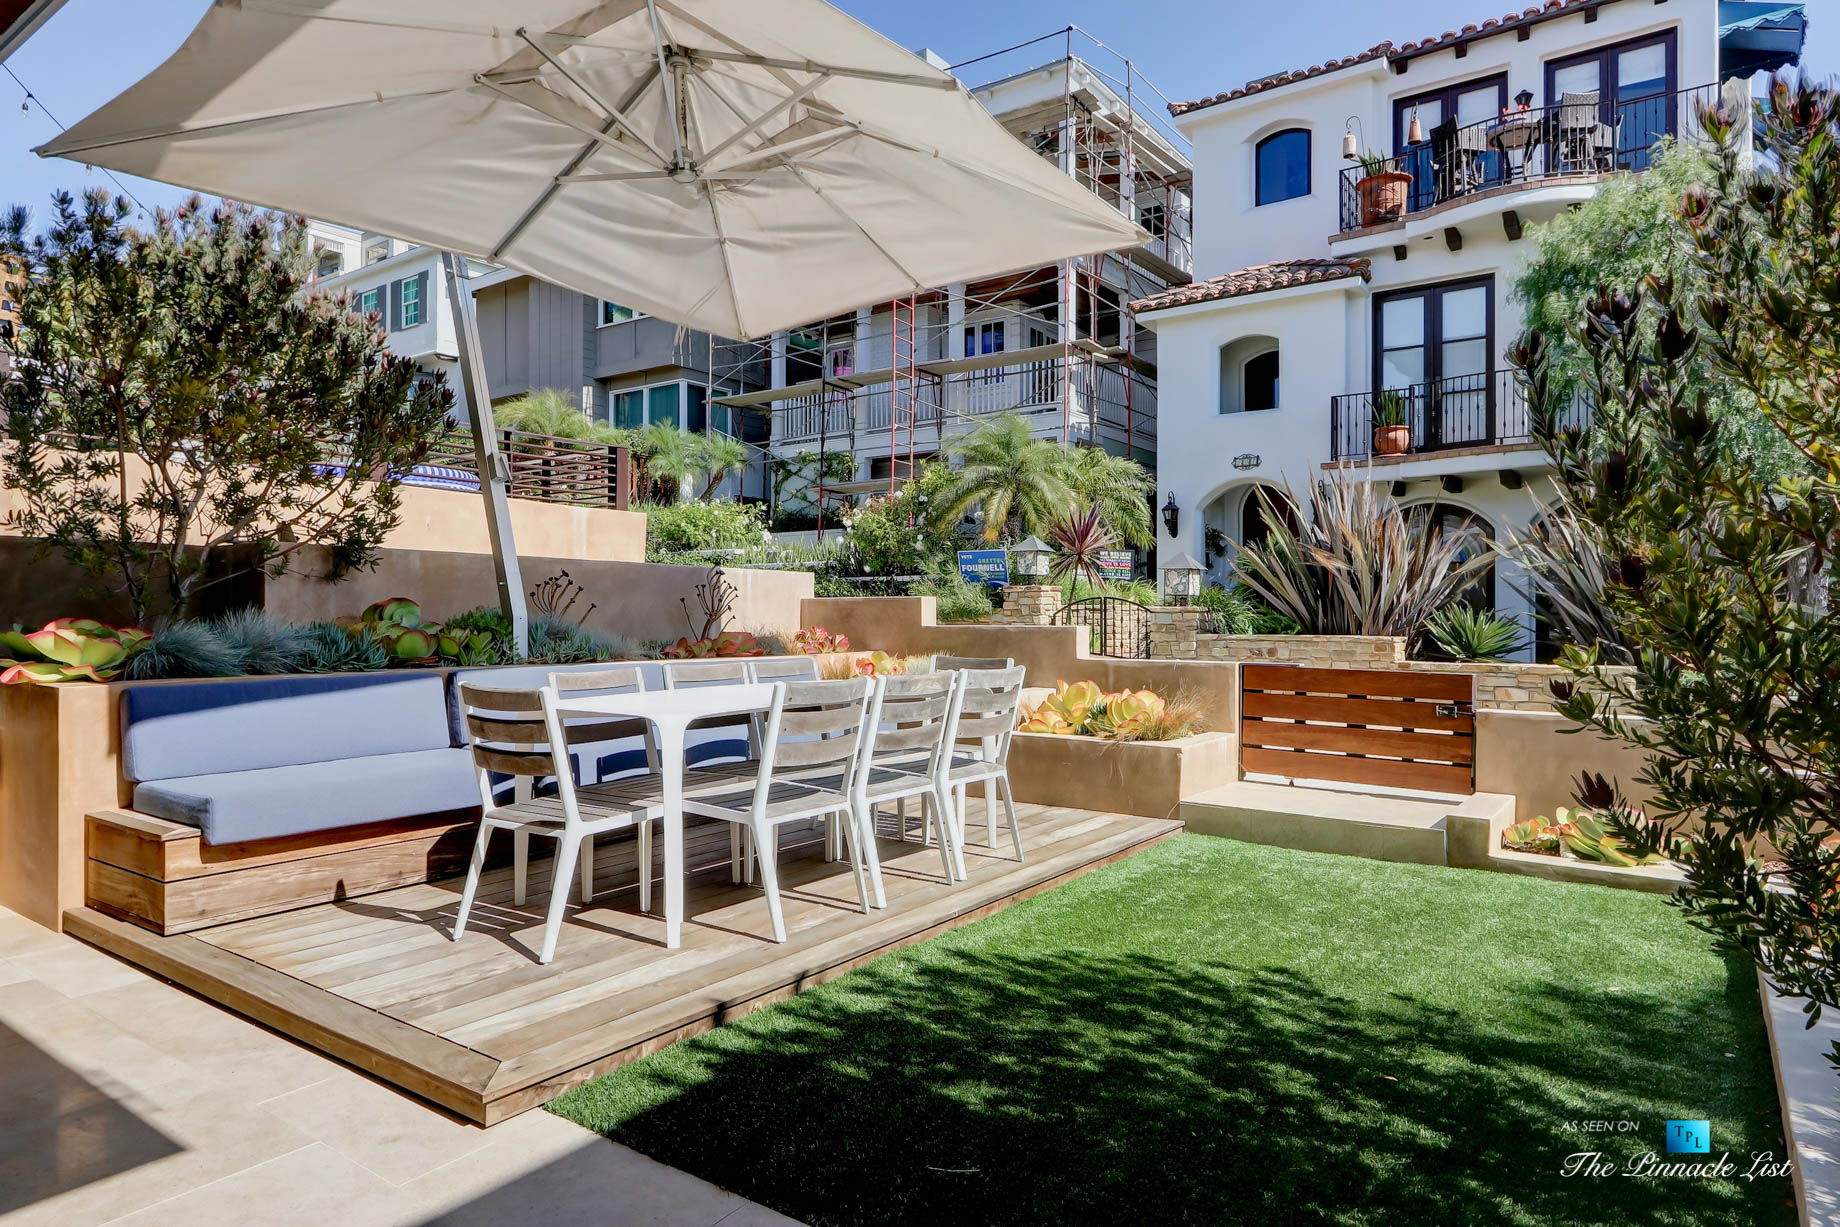 205 20th Street, Manhattan Beach, CA, USA – Patio and Yard – Luxury Real Estate – Ocean View Home